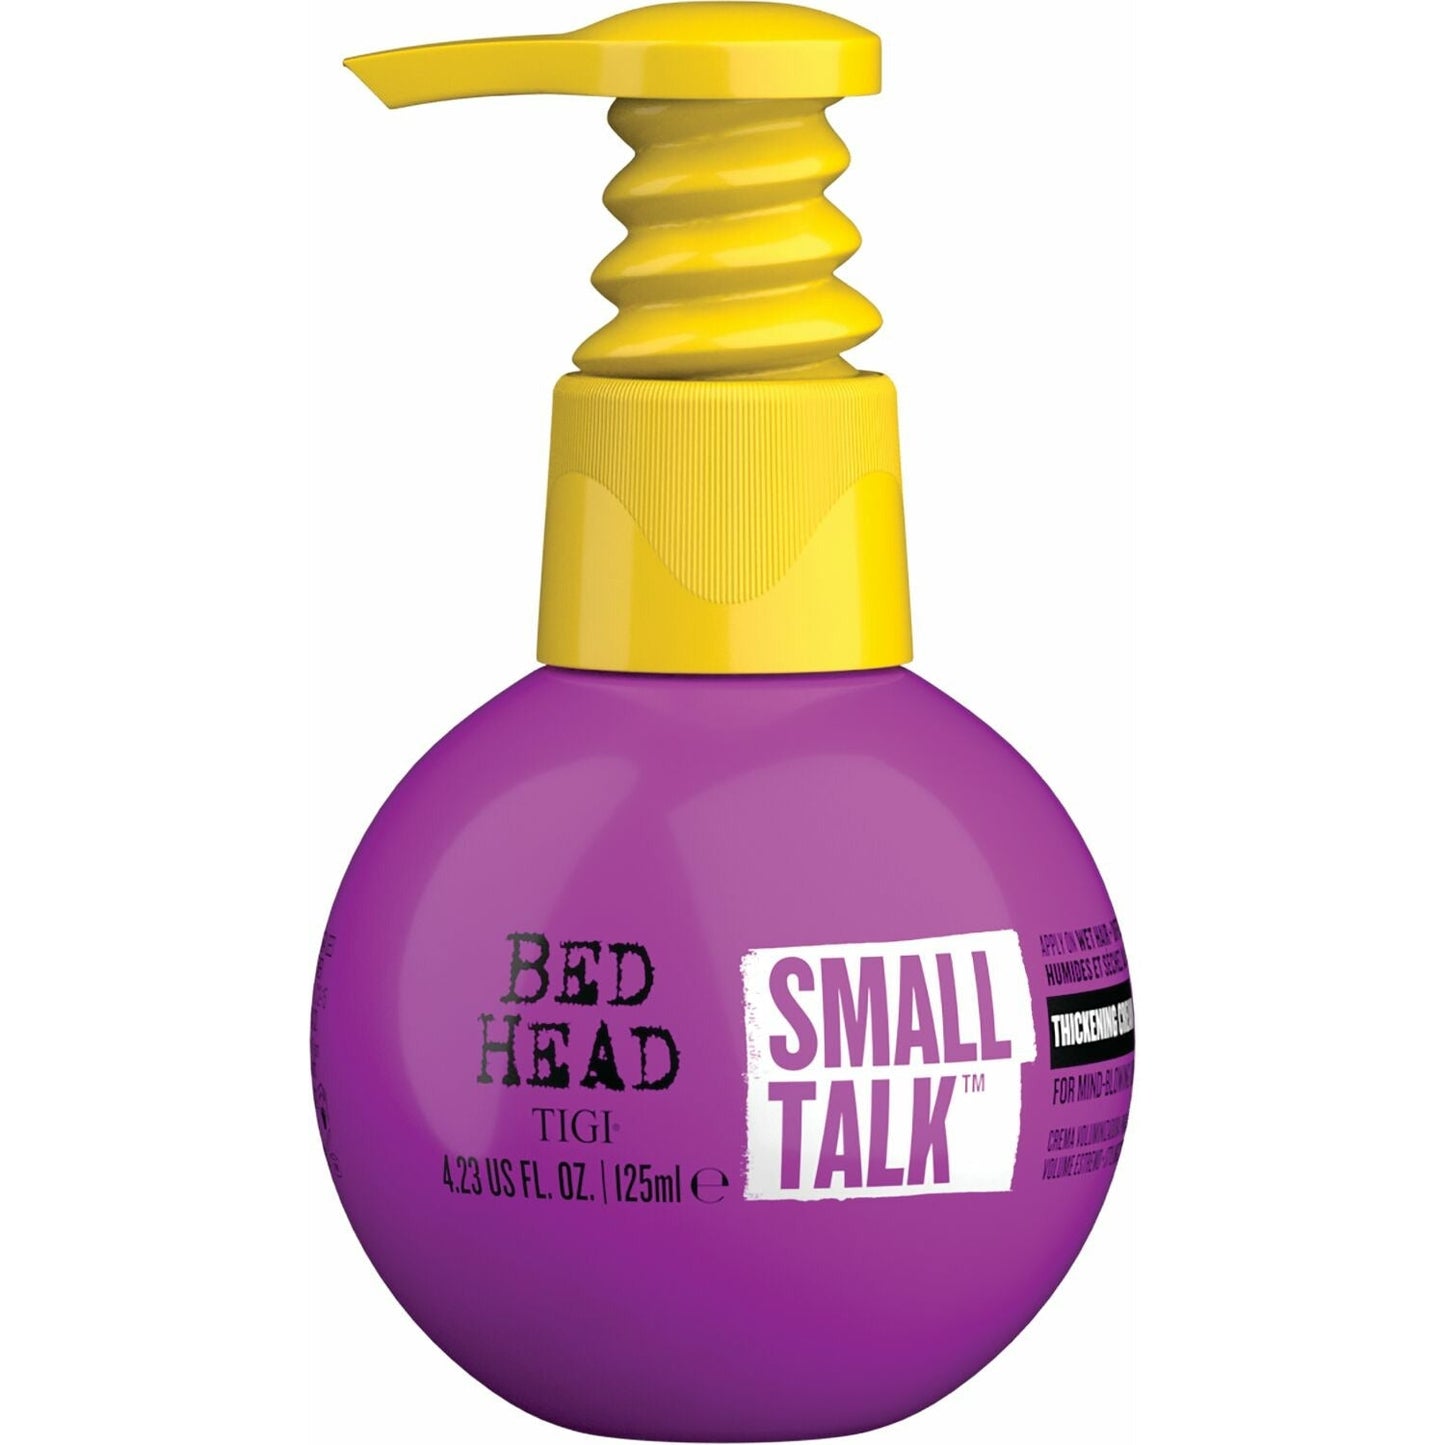 
                  
                    Small Talk Cream
                  
                